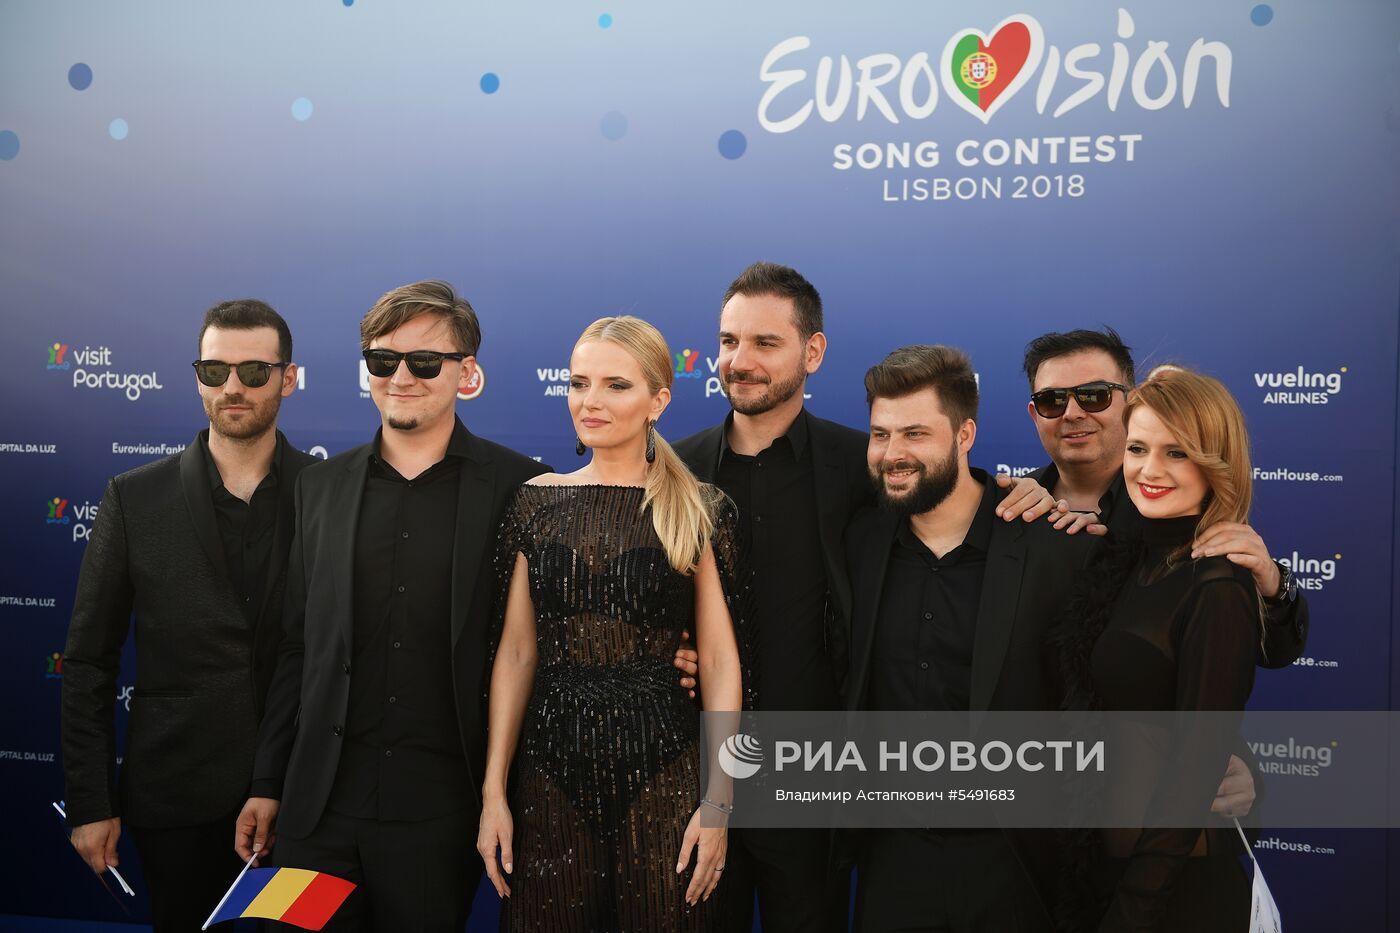 Открытие международного конкурса песни "Евровидение-2018"